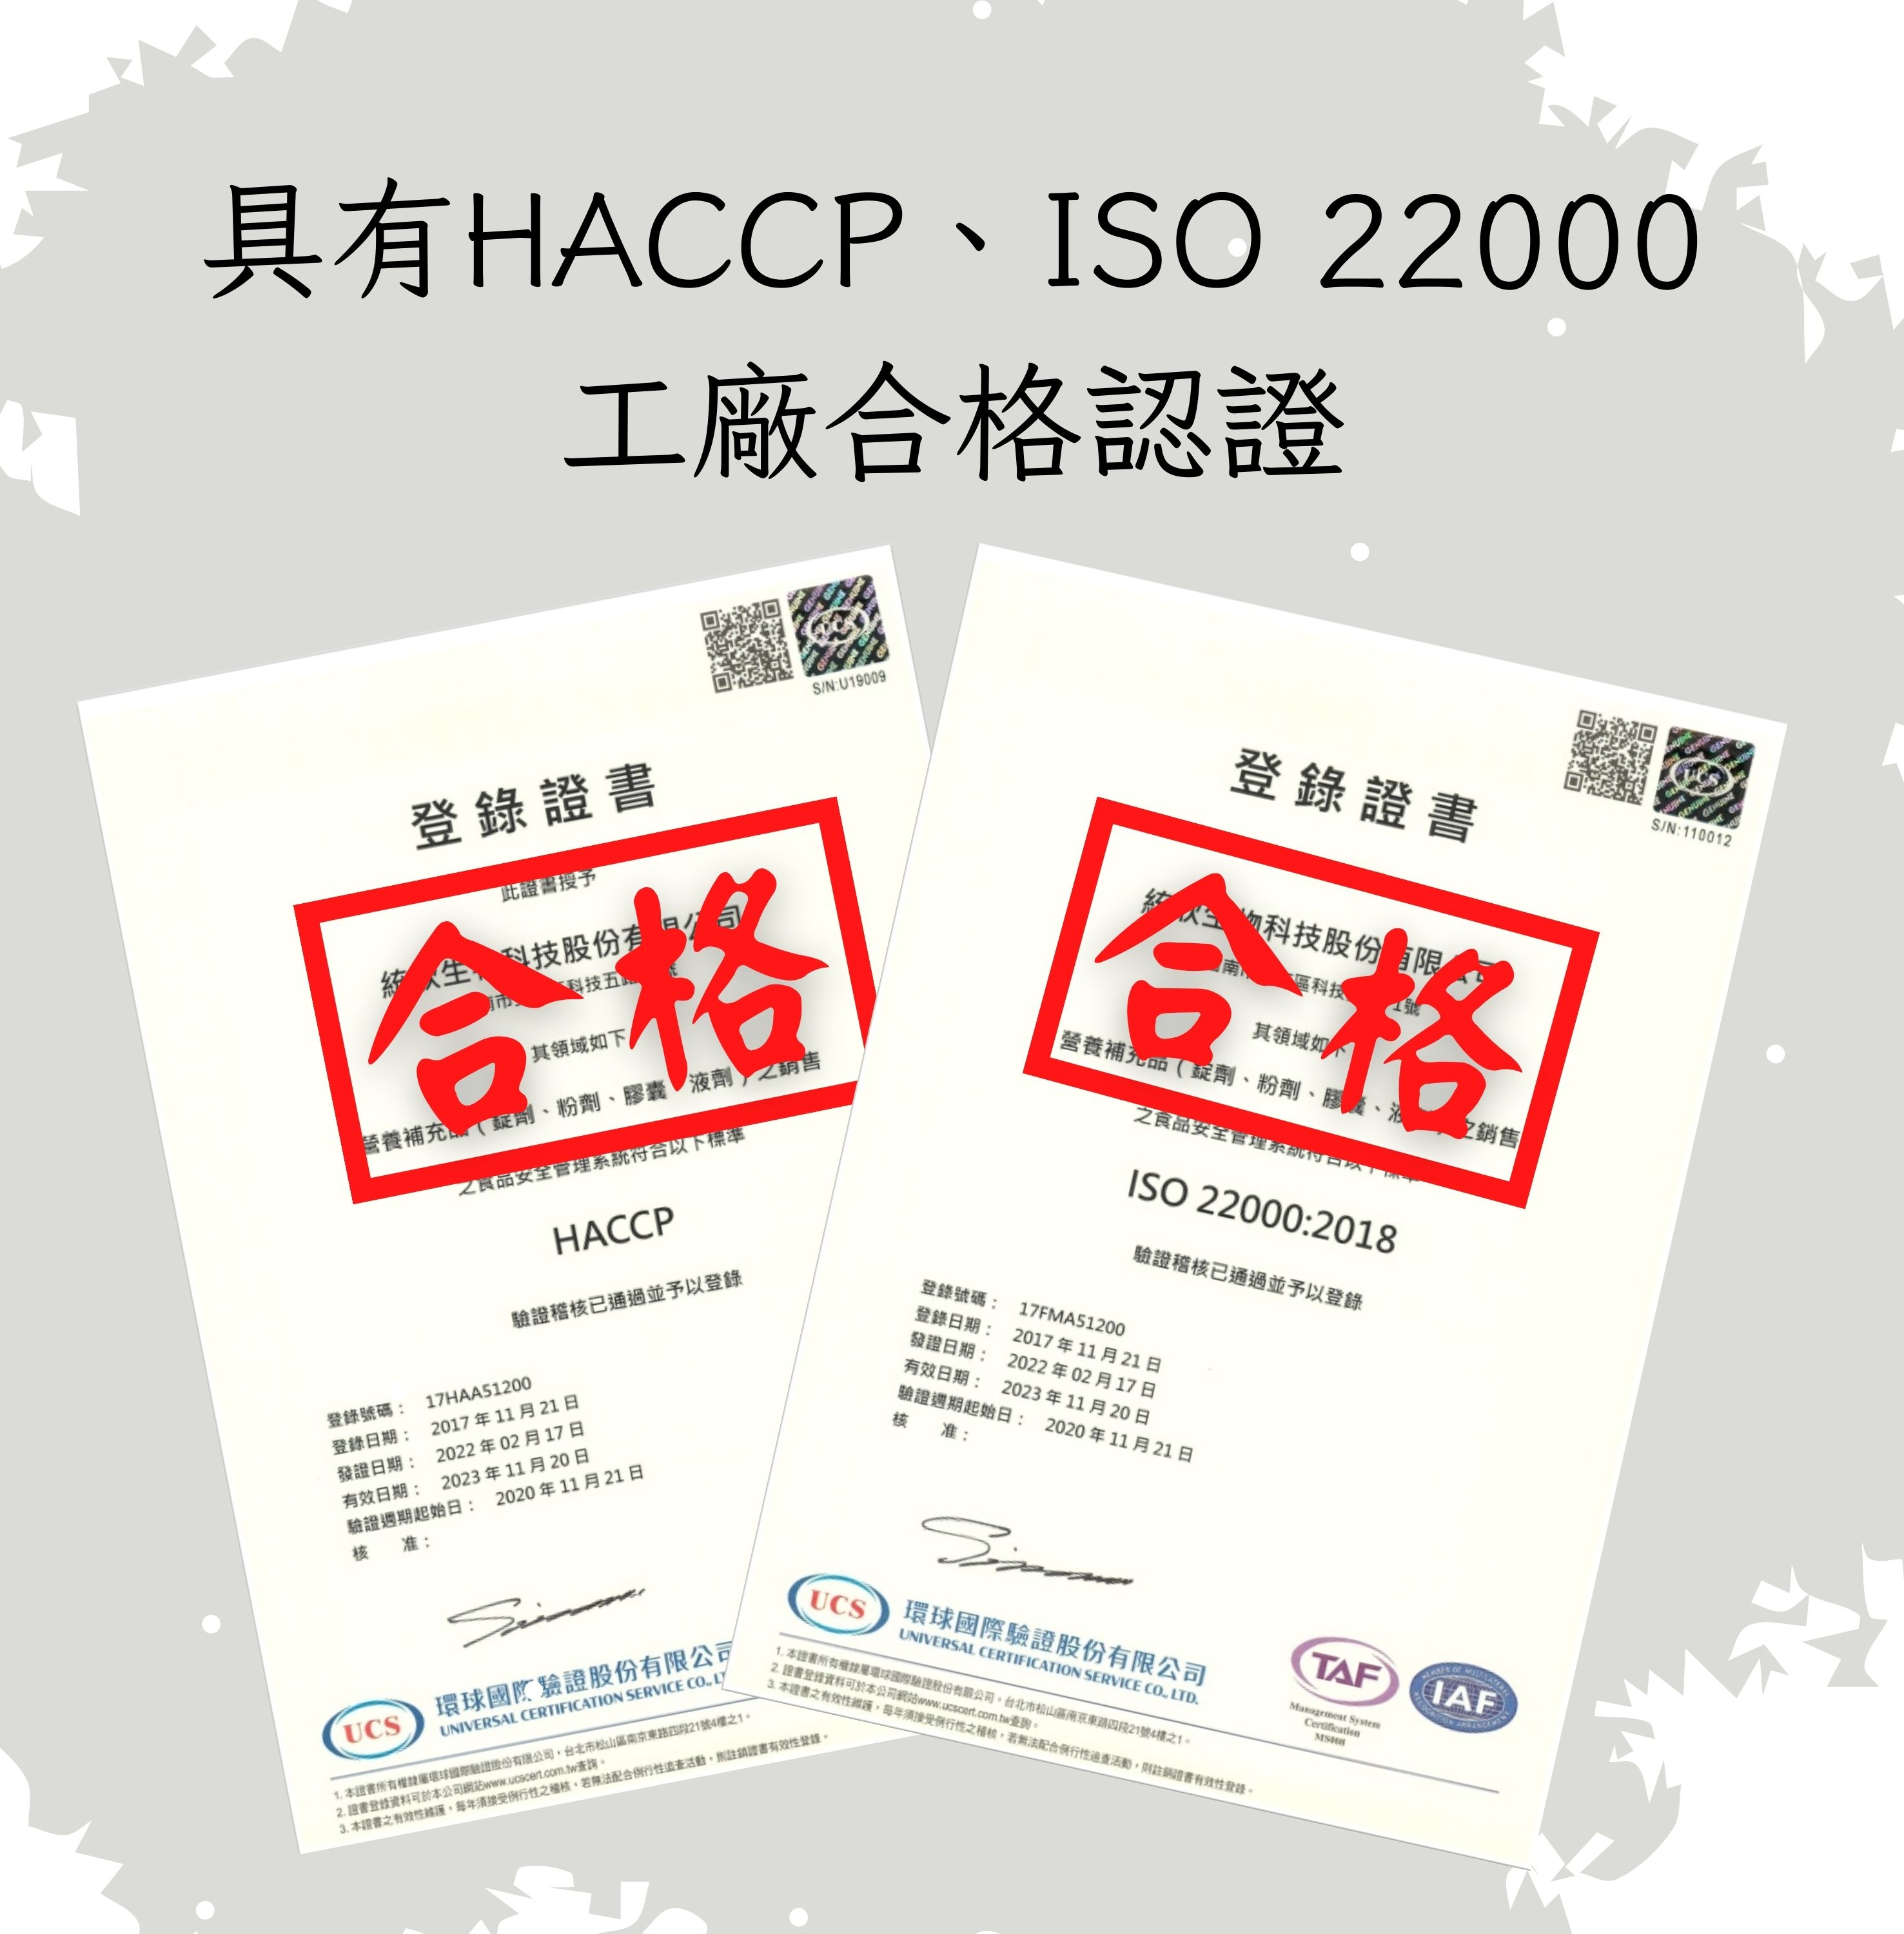 具有HACCP、ISO 22000，工廠合格認證，登錄證書，此證書授予，統人生,科技股份有限公司，科技五，其領域如下，營養補充錠劑、粉劑、膠囊液劑之銷售，之食品安全管理系統符合以下標準，驗證稽核已通過並予以登錄，登錄號碼: 17HAA51200，登錄